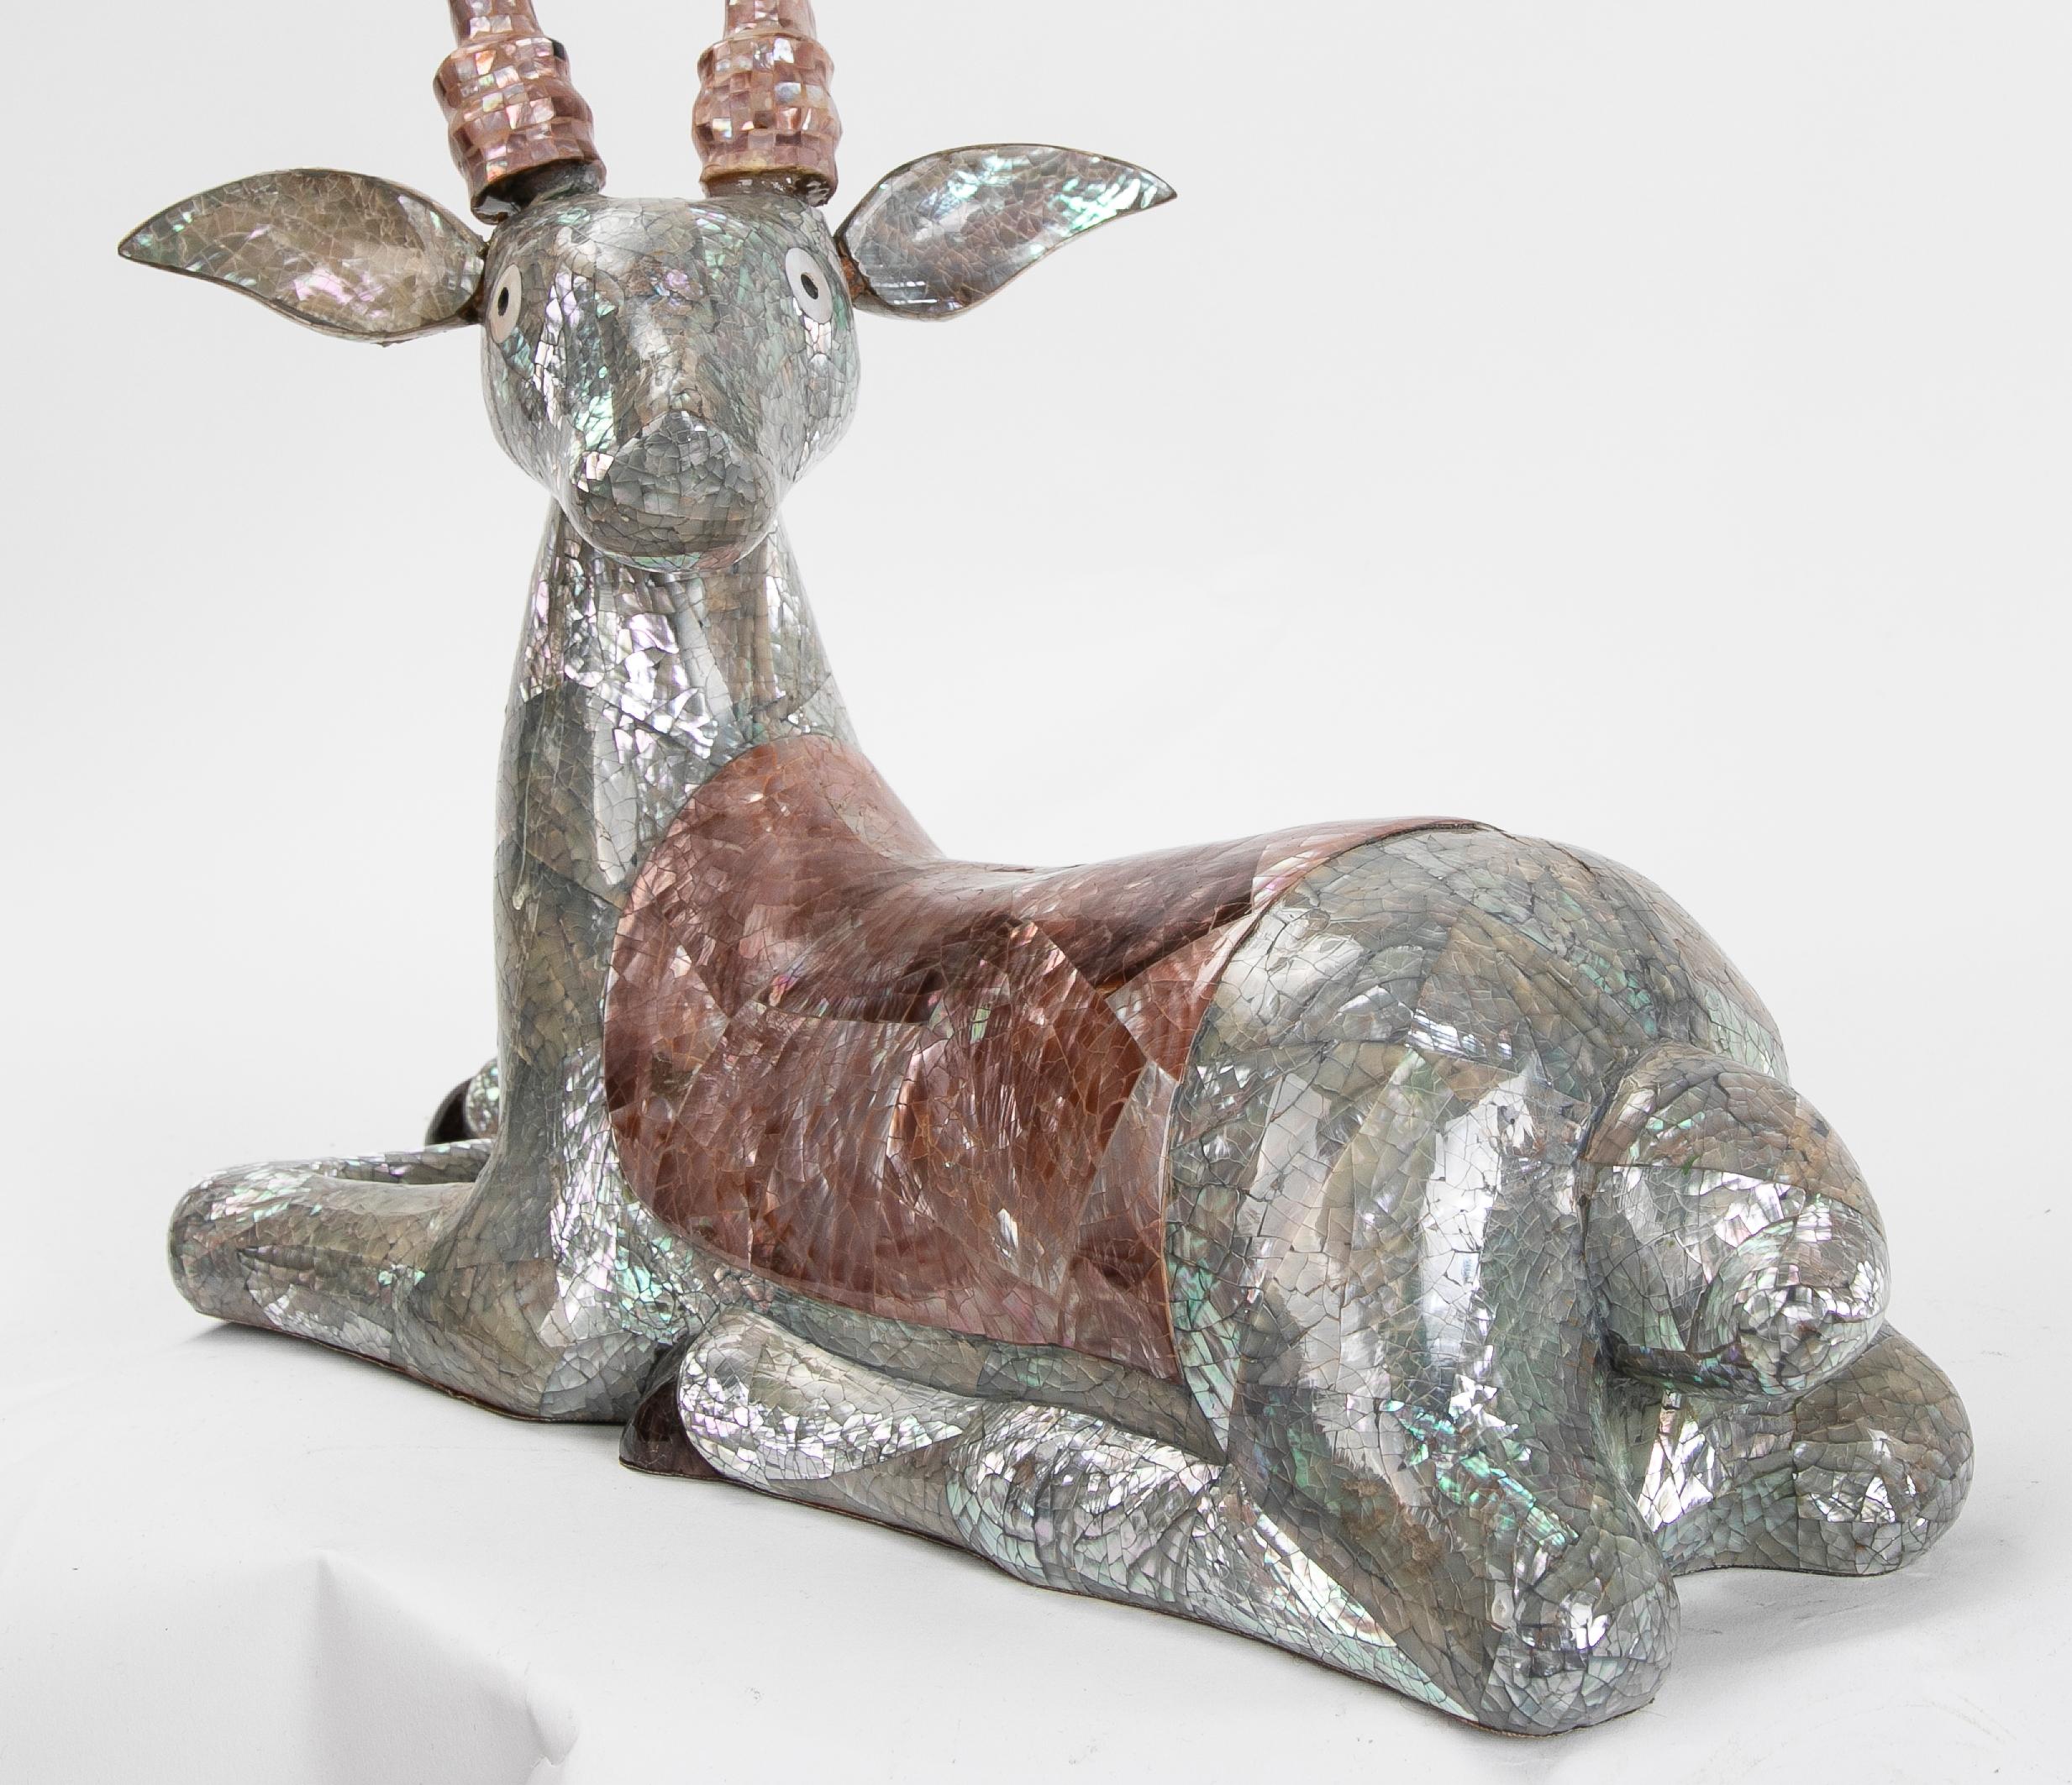 Skulptur einer Hirsche aus den 1980er Jahren, die mit Perlmuttgeflecht auf dem Boden liegt.
 